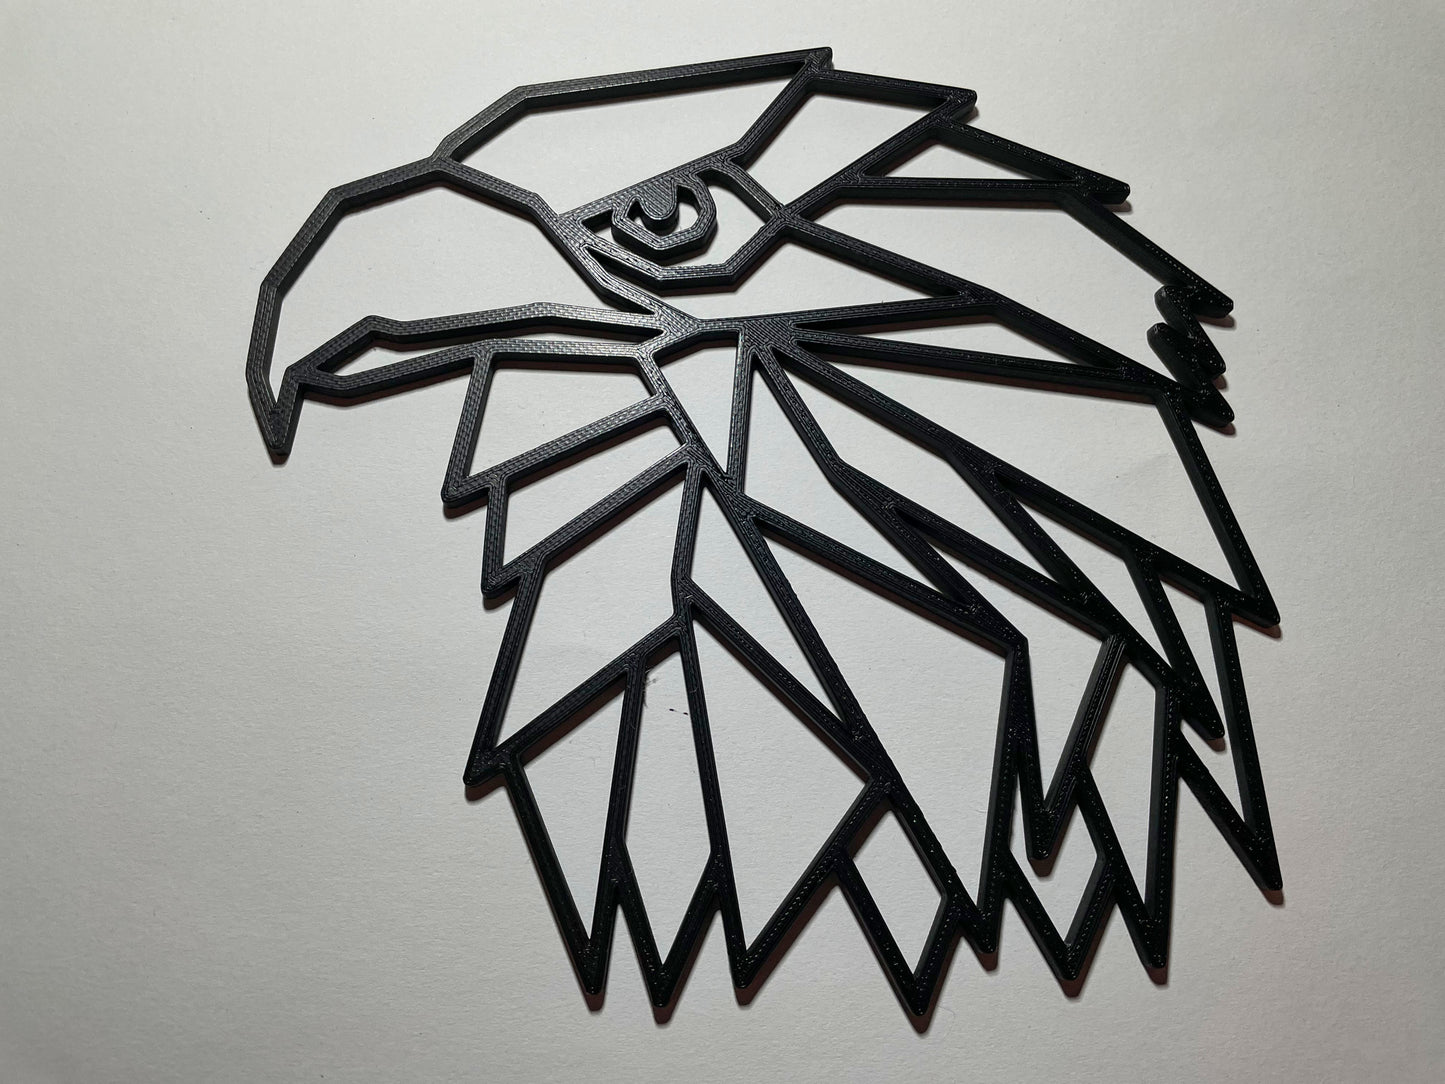 Elegante Geometrie: 3D-gedruckte Adler Wanddekoration - Wählen Sie aus 5 Farben und beeindrucken Sie Ihre Gäste!